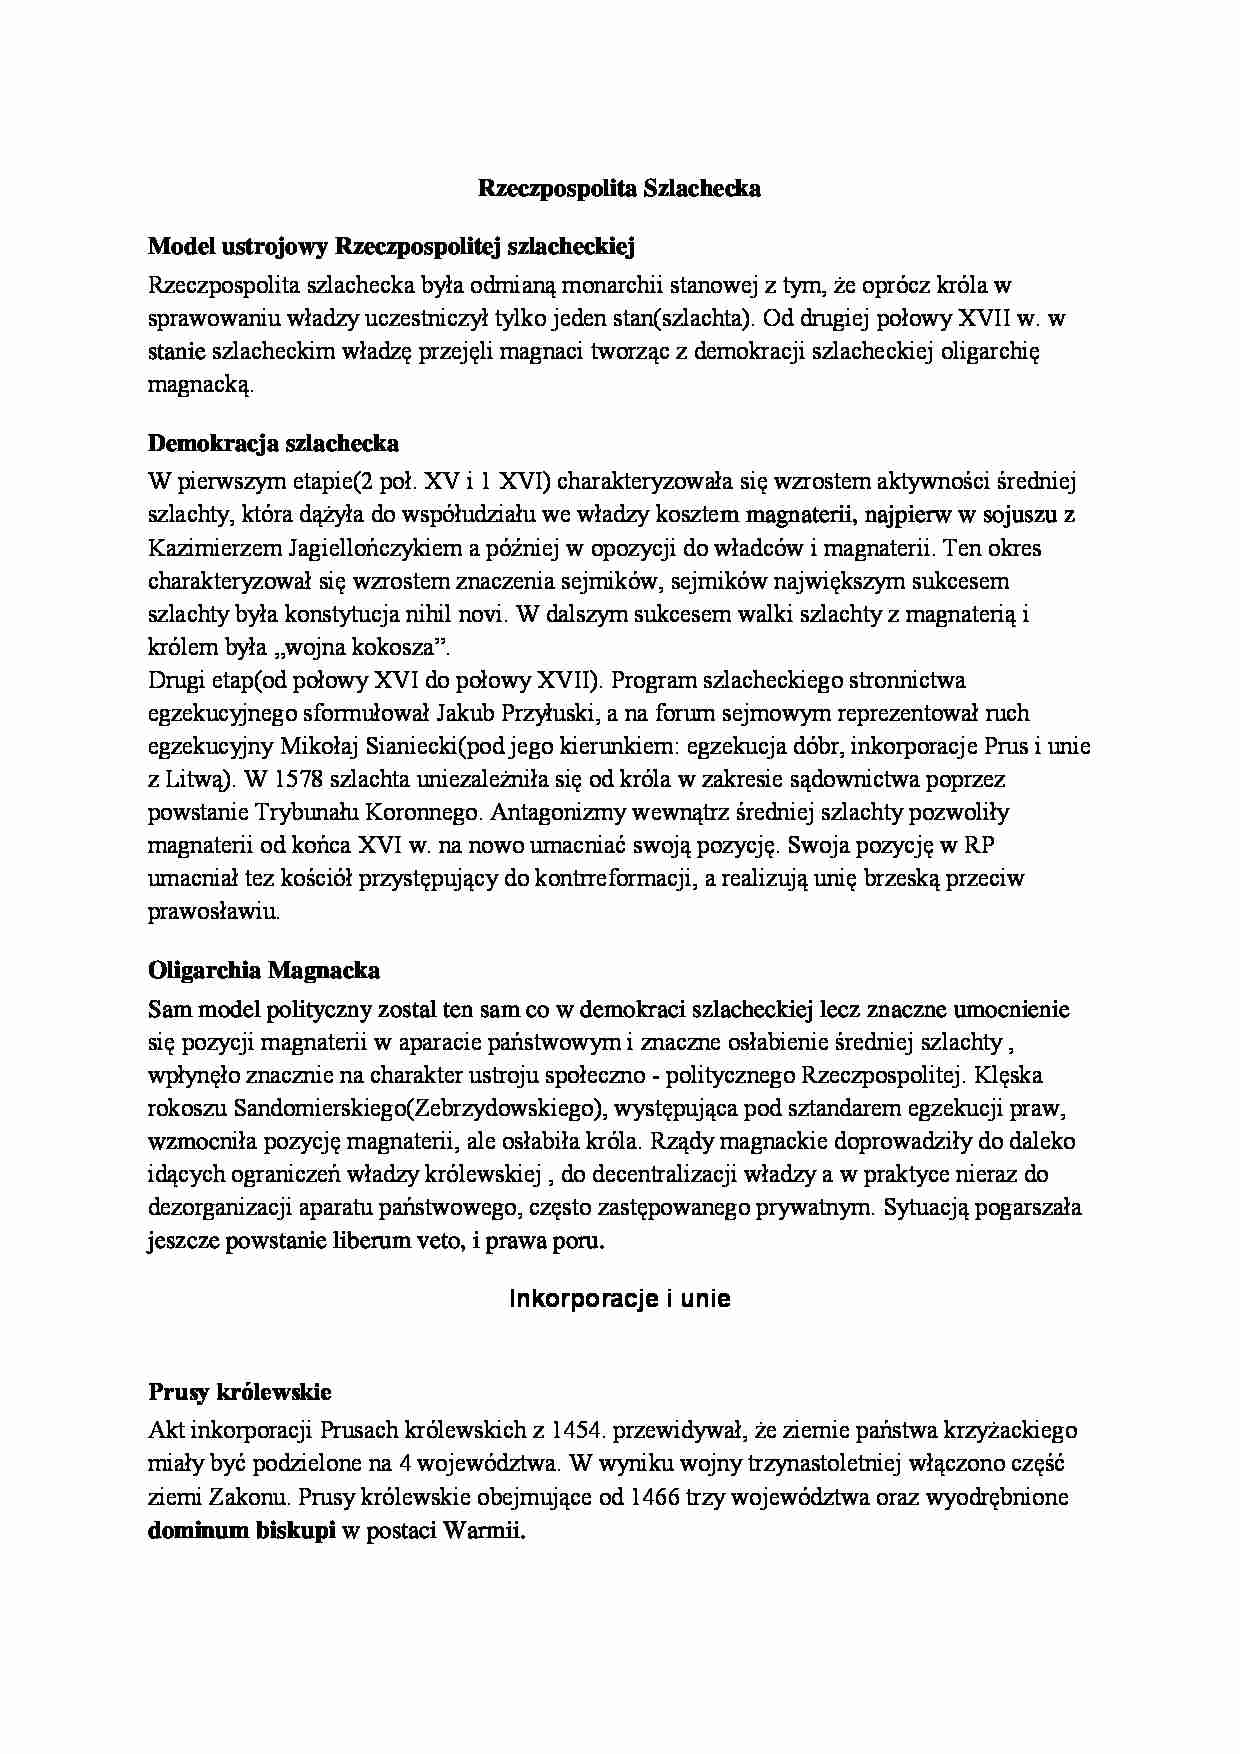 Rzeczpospolita Szlachecka i jej inkorporacje - omówienie  - strona 1